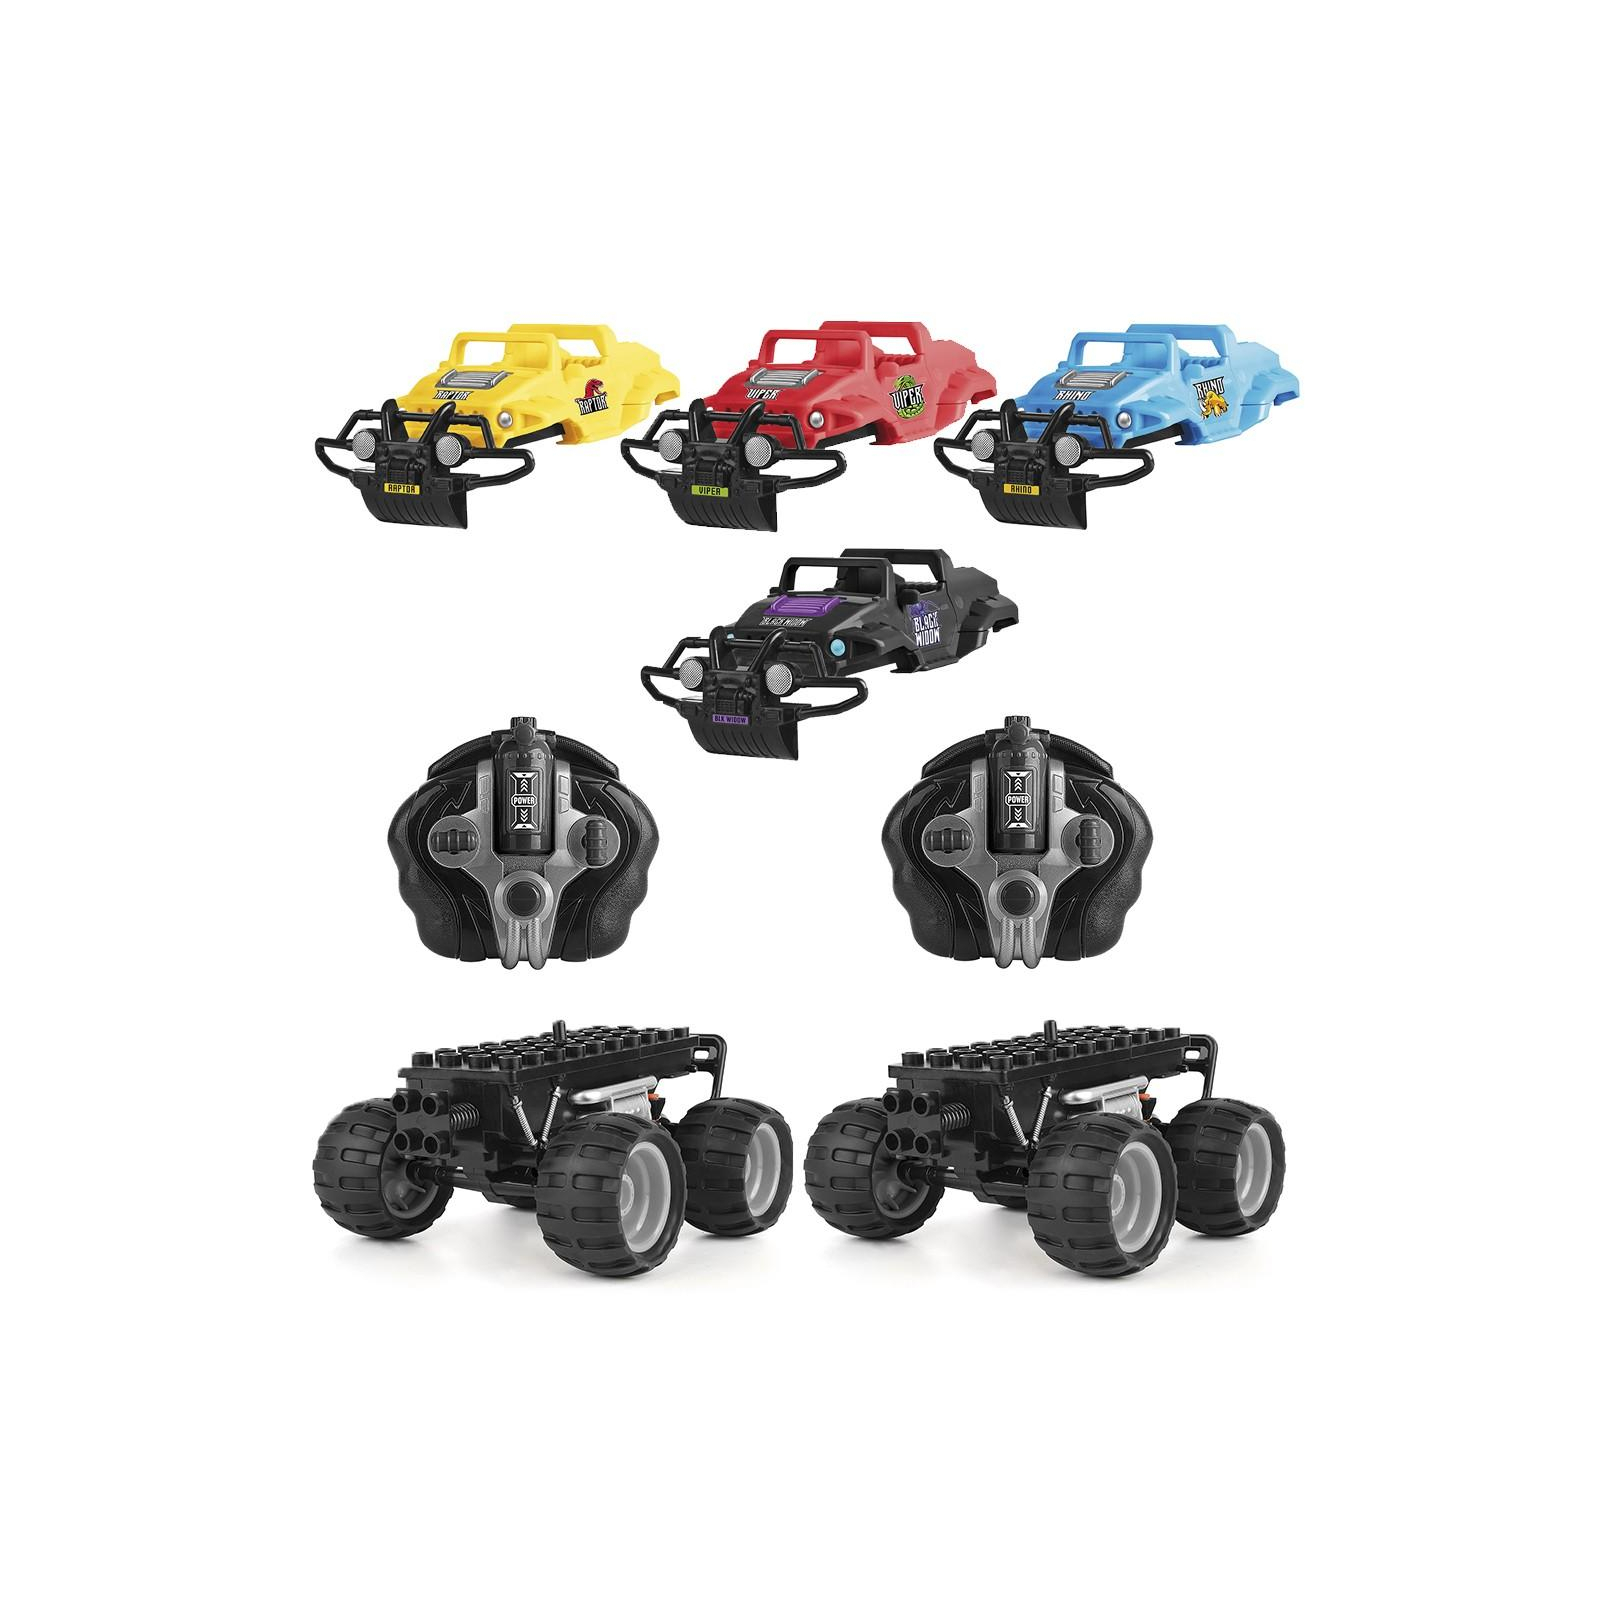 Радиоуправляемая игрушка Monster Smash-Ups CRASH CAR на р/у – БИТВА КОМАНД 2 модели, 4 корпуса, аккум. (TY6007)